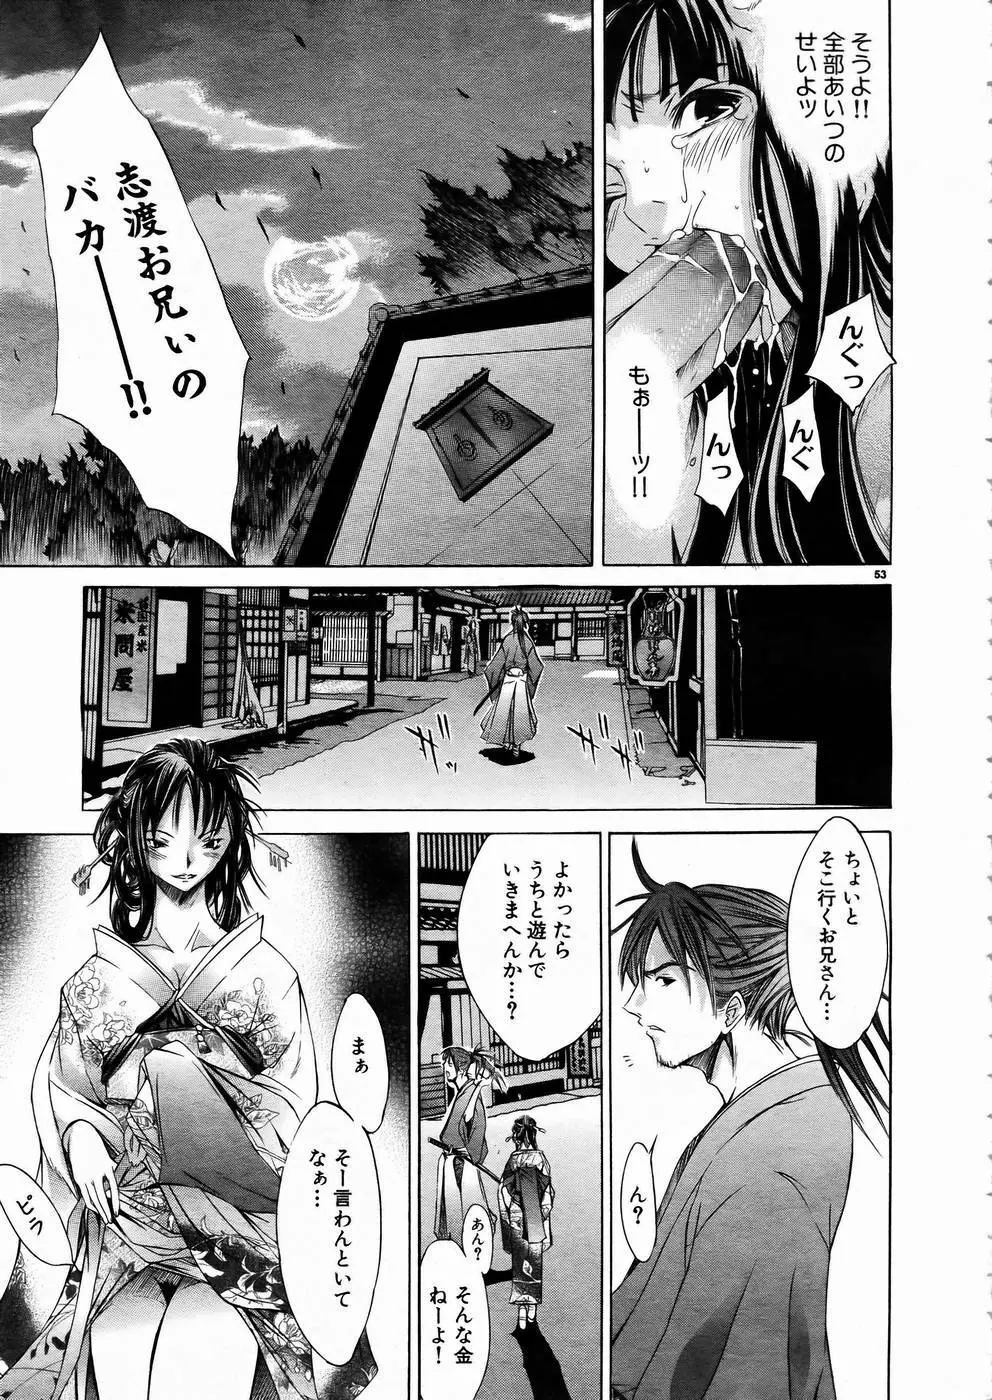 少女剣客凌辱コミック Vol.01 くノ一斬! 52ページ